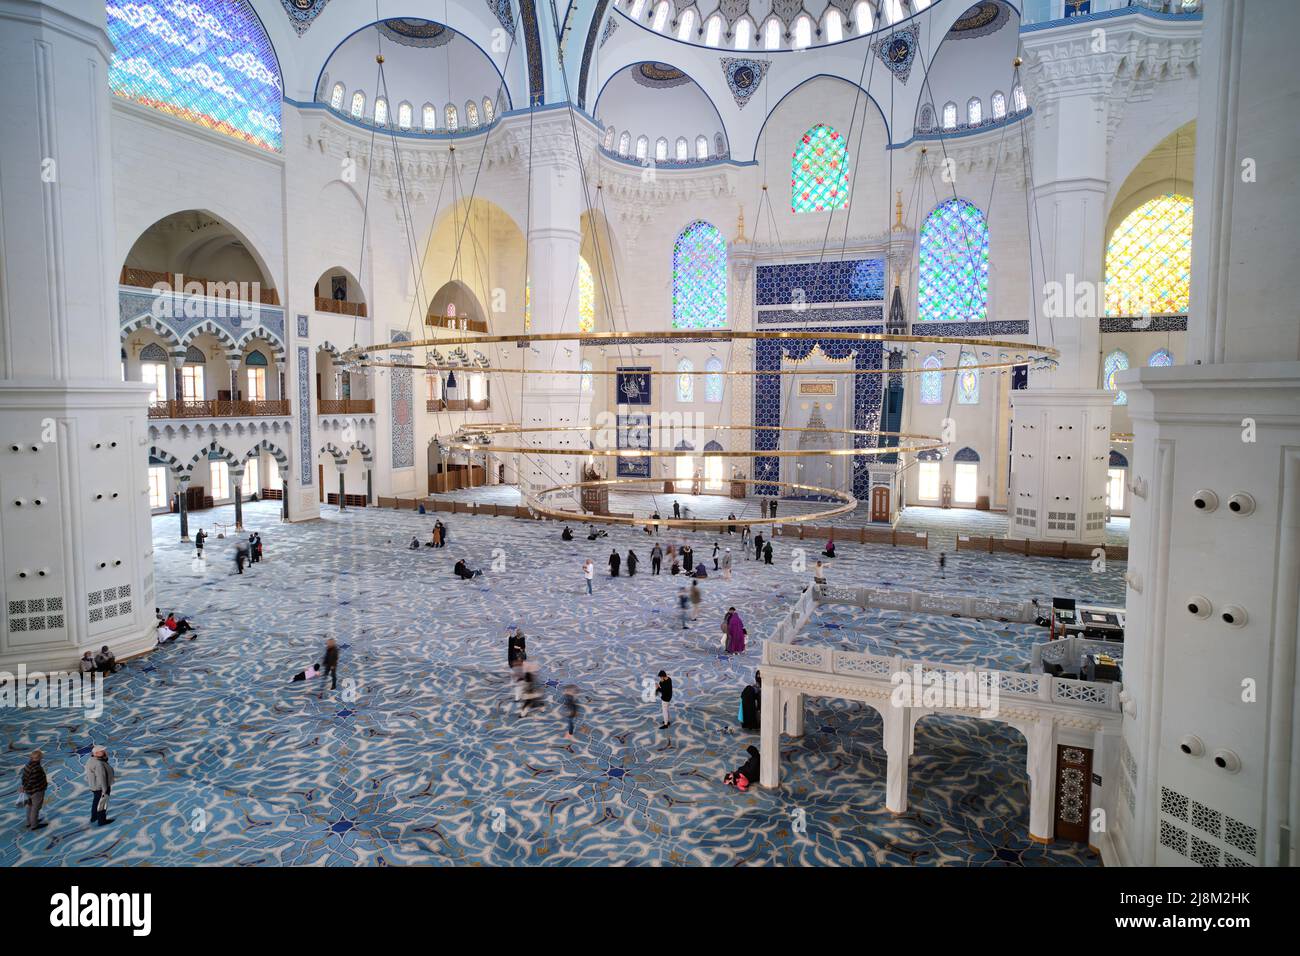 Dettagli interni della Grande moschea Camlica, la più grande moschea della Turchia situata al Camlica Hill, completata e aperta nel marzo 2019. Foto Stock